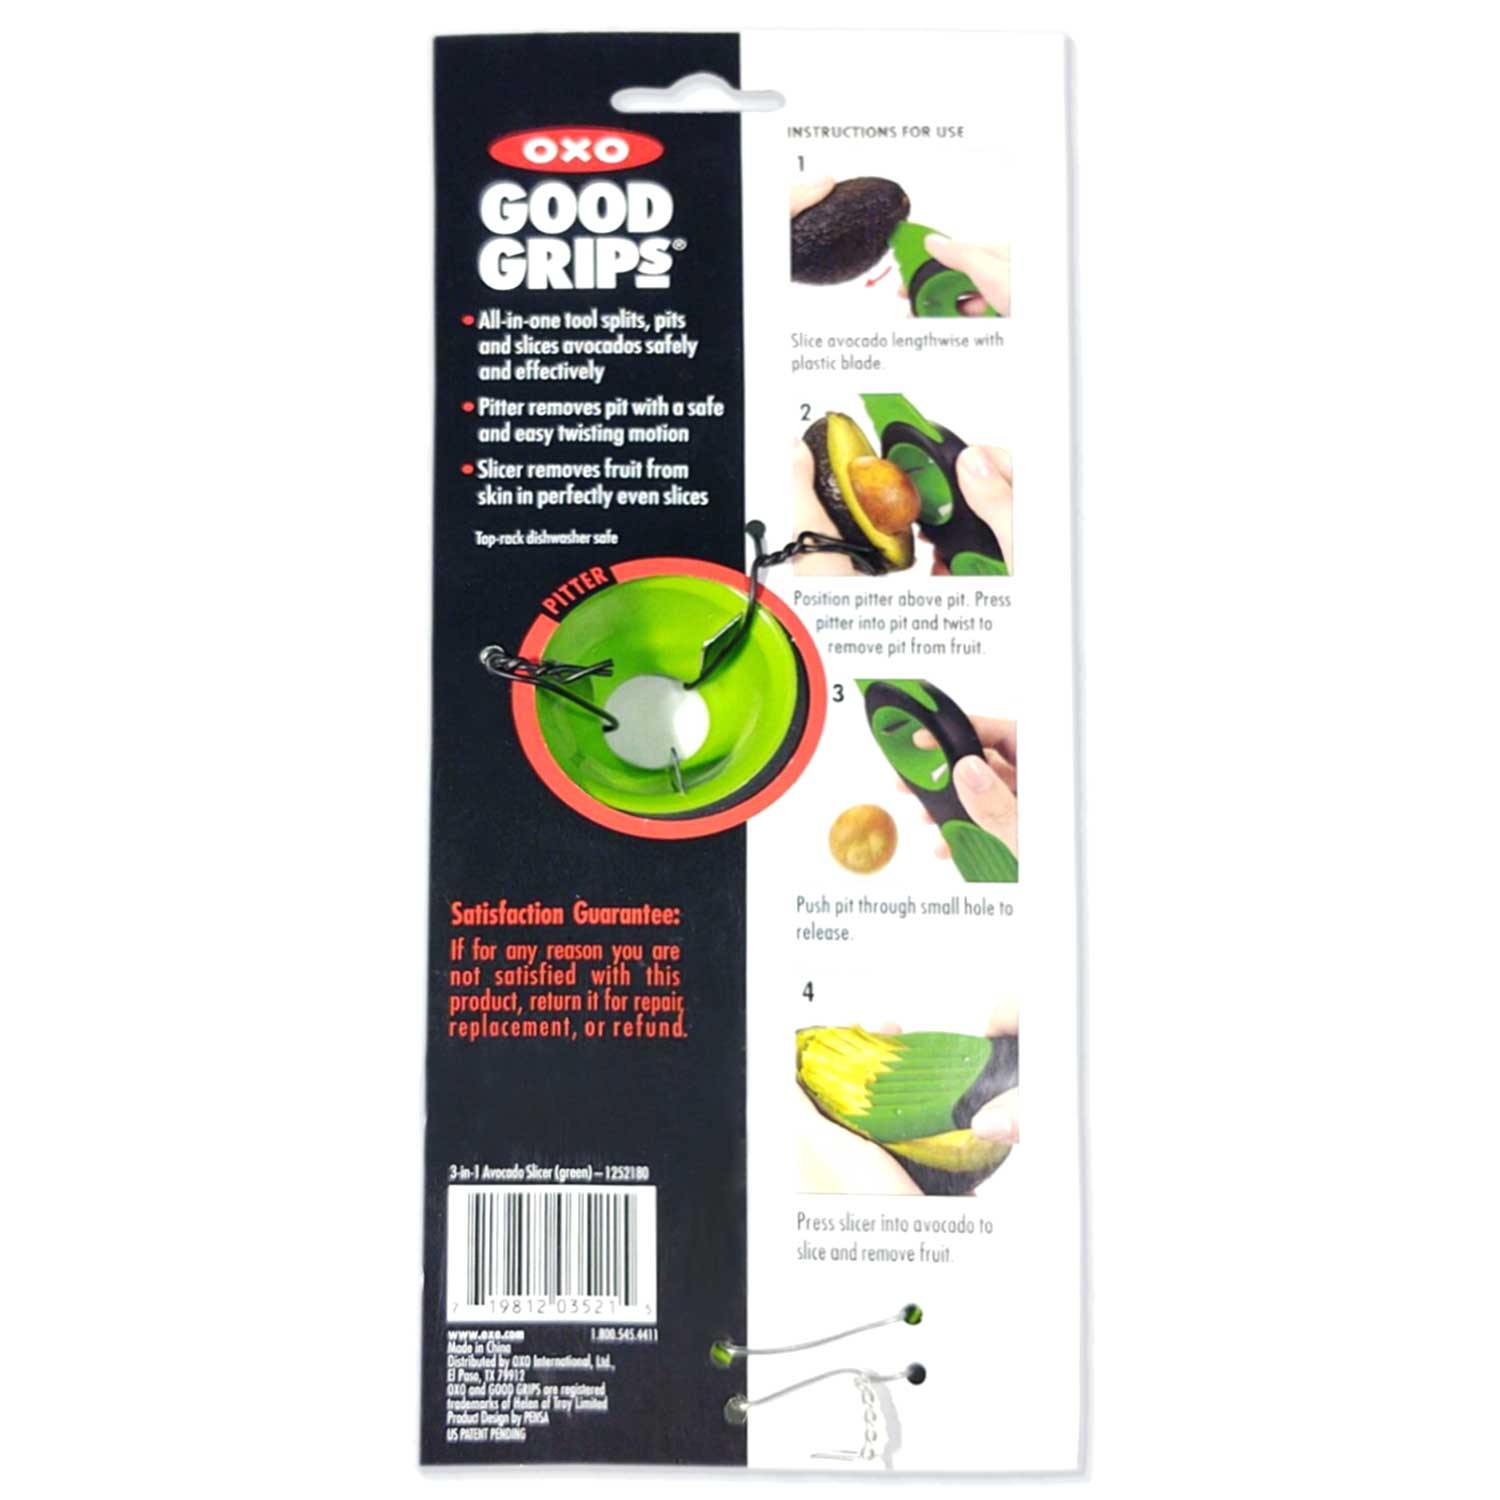 OXO Good Grips 3-in-1 Avocado Slicer Review 